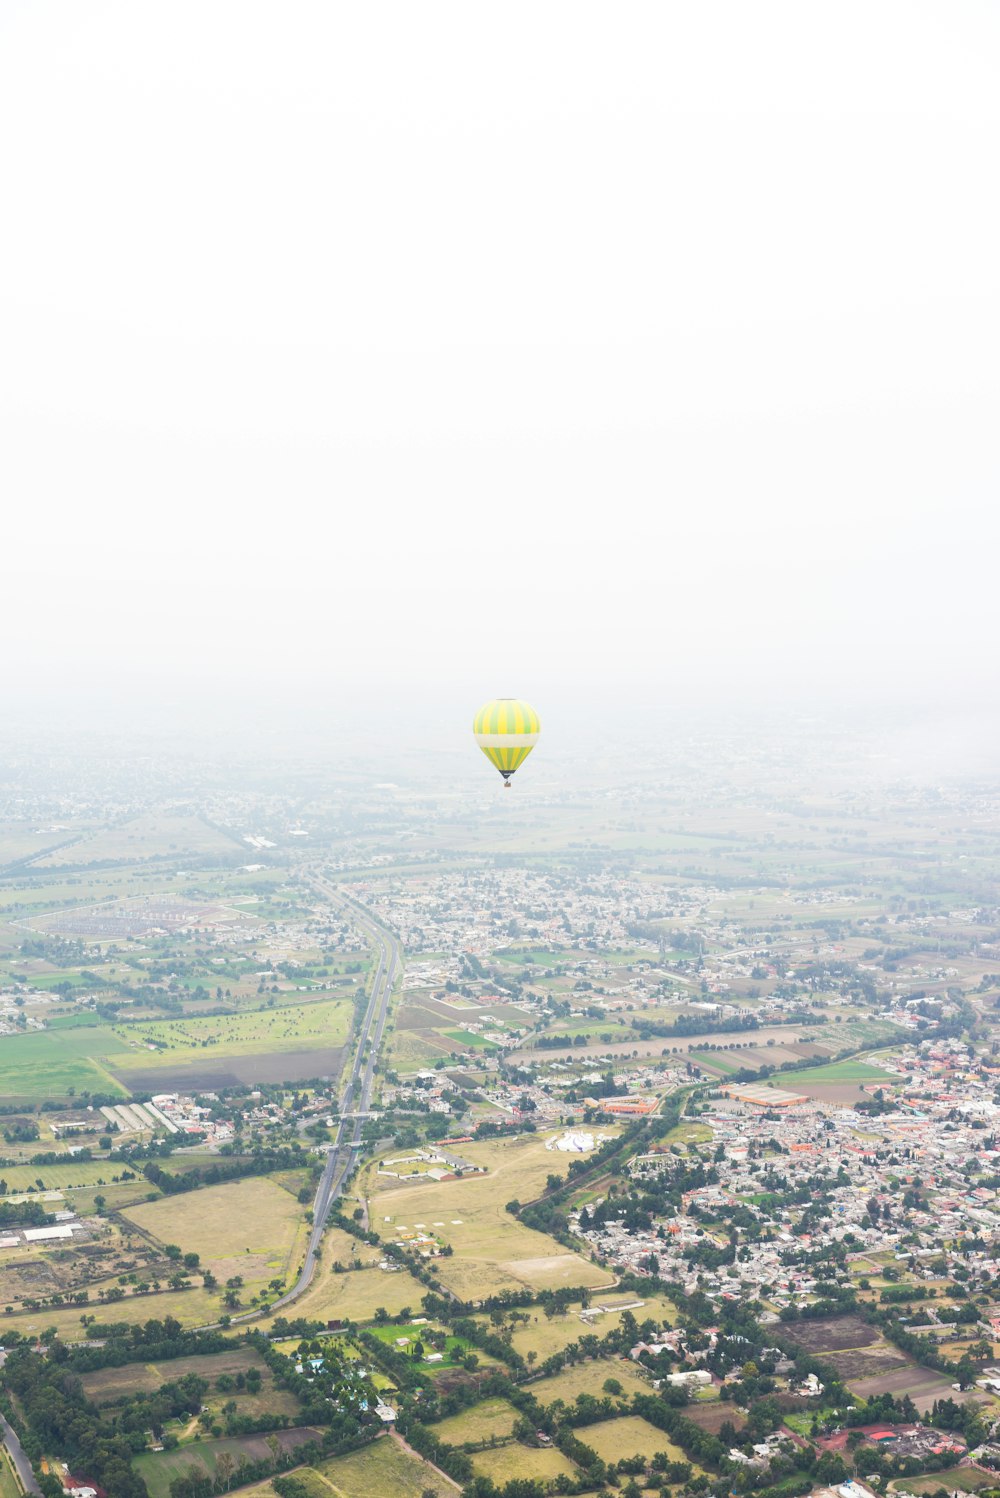 Foto de globo aerostático amarillo flotando sobre las casas